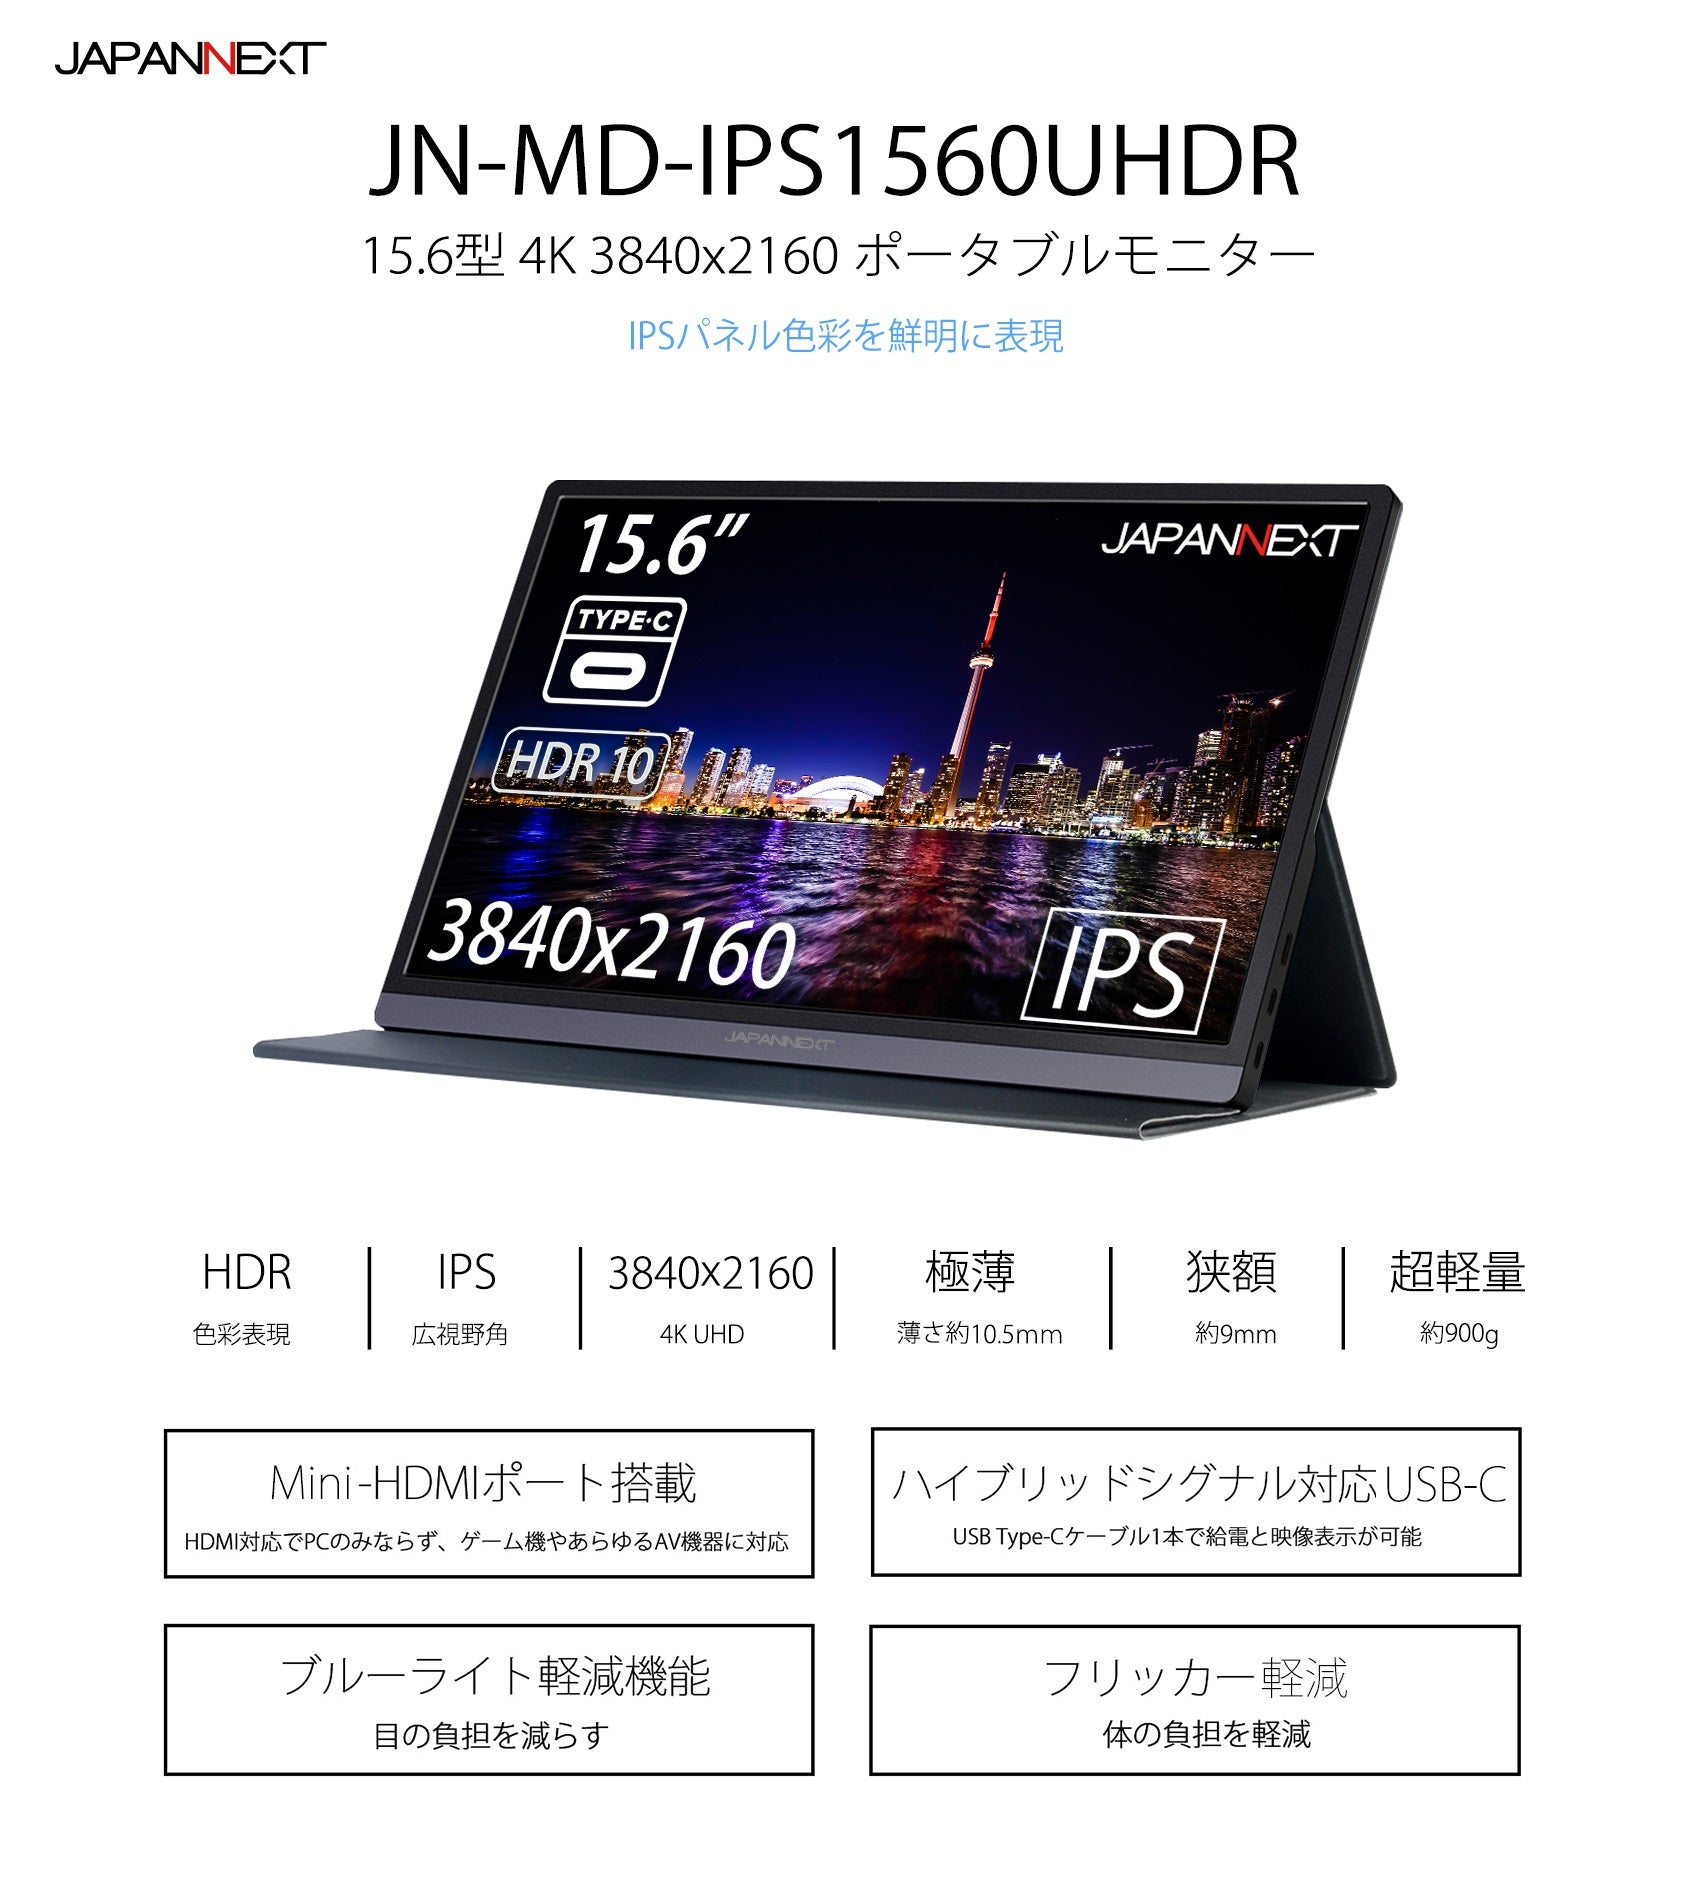 JN-MD-IPS1560UHDR